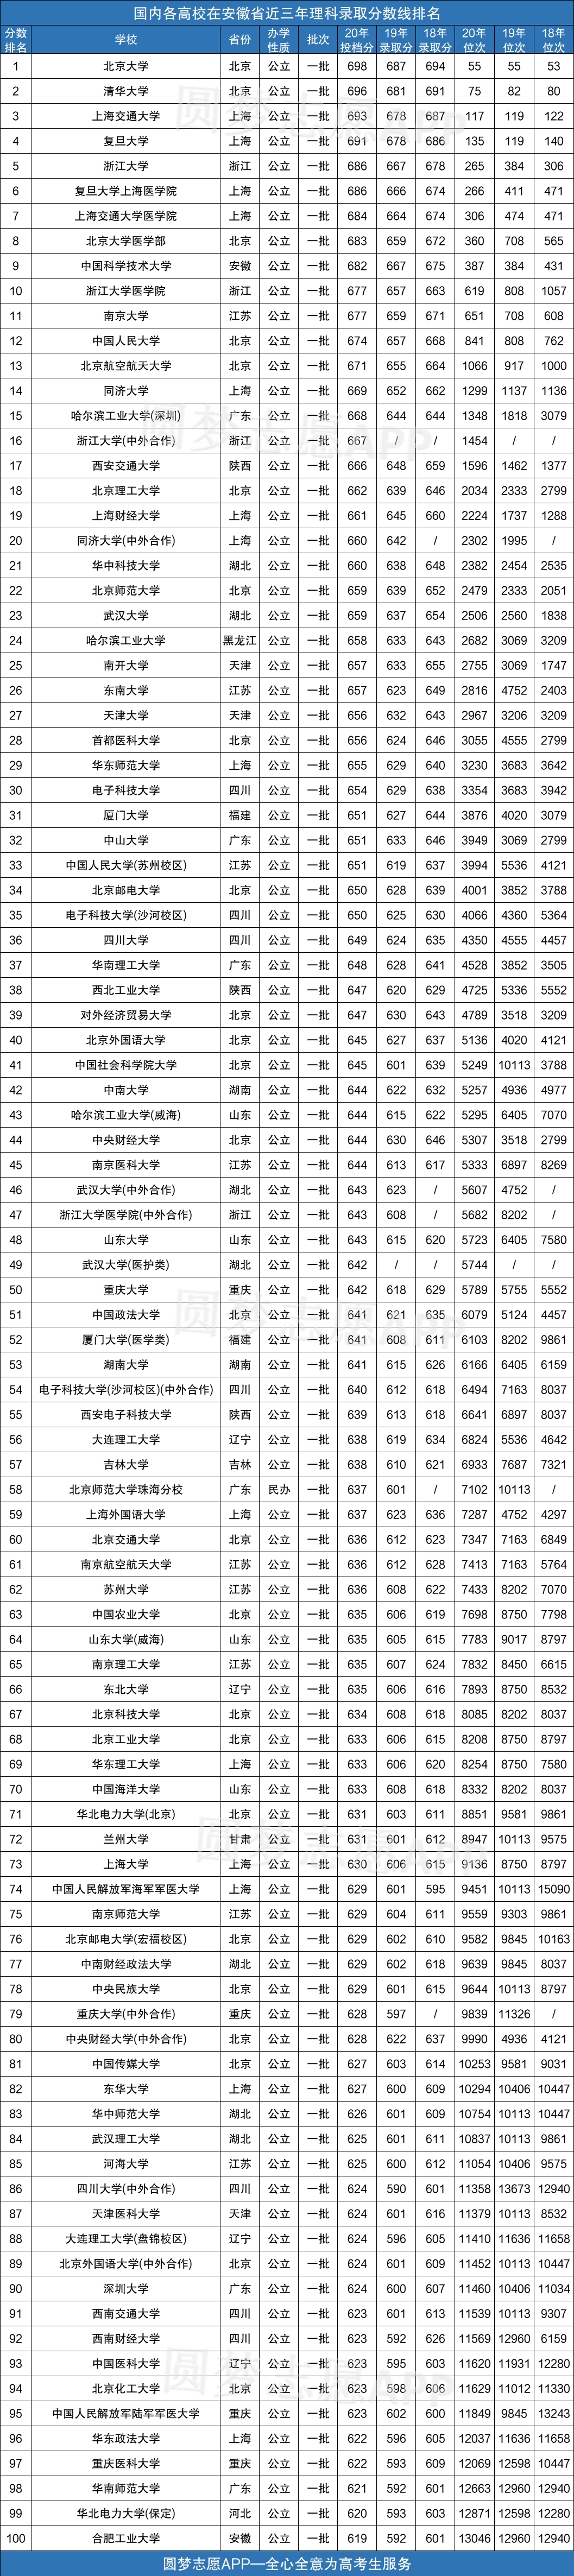 河南380理科录取学校及分数_10年高考北京理科分数_理科录取分数线